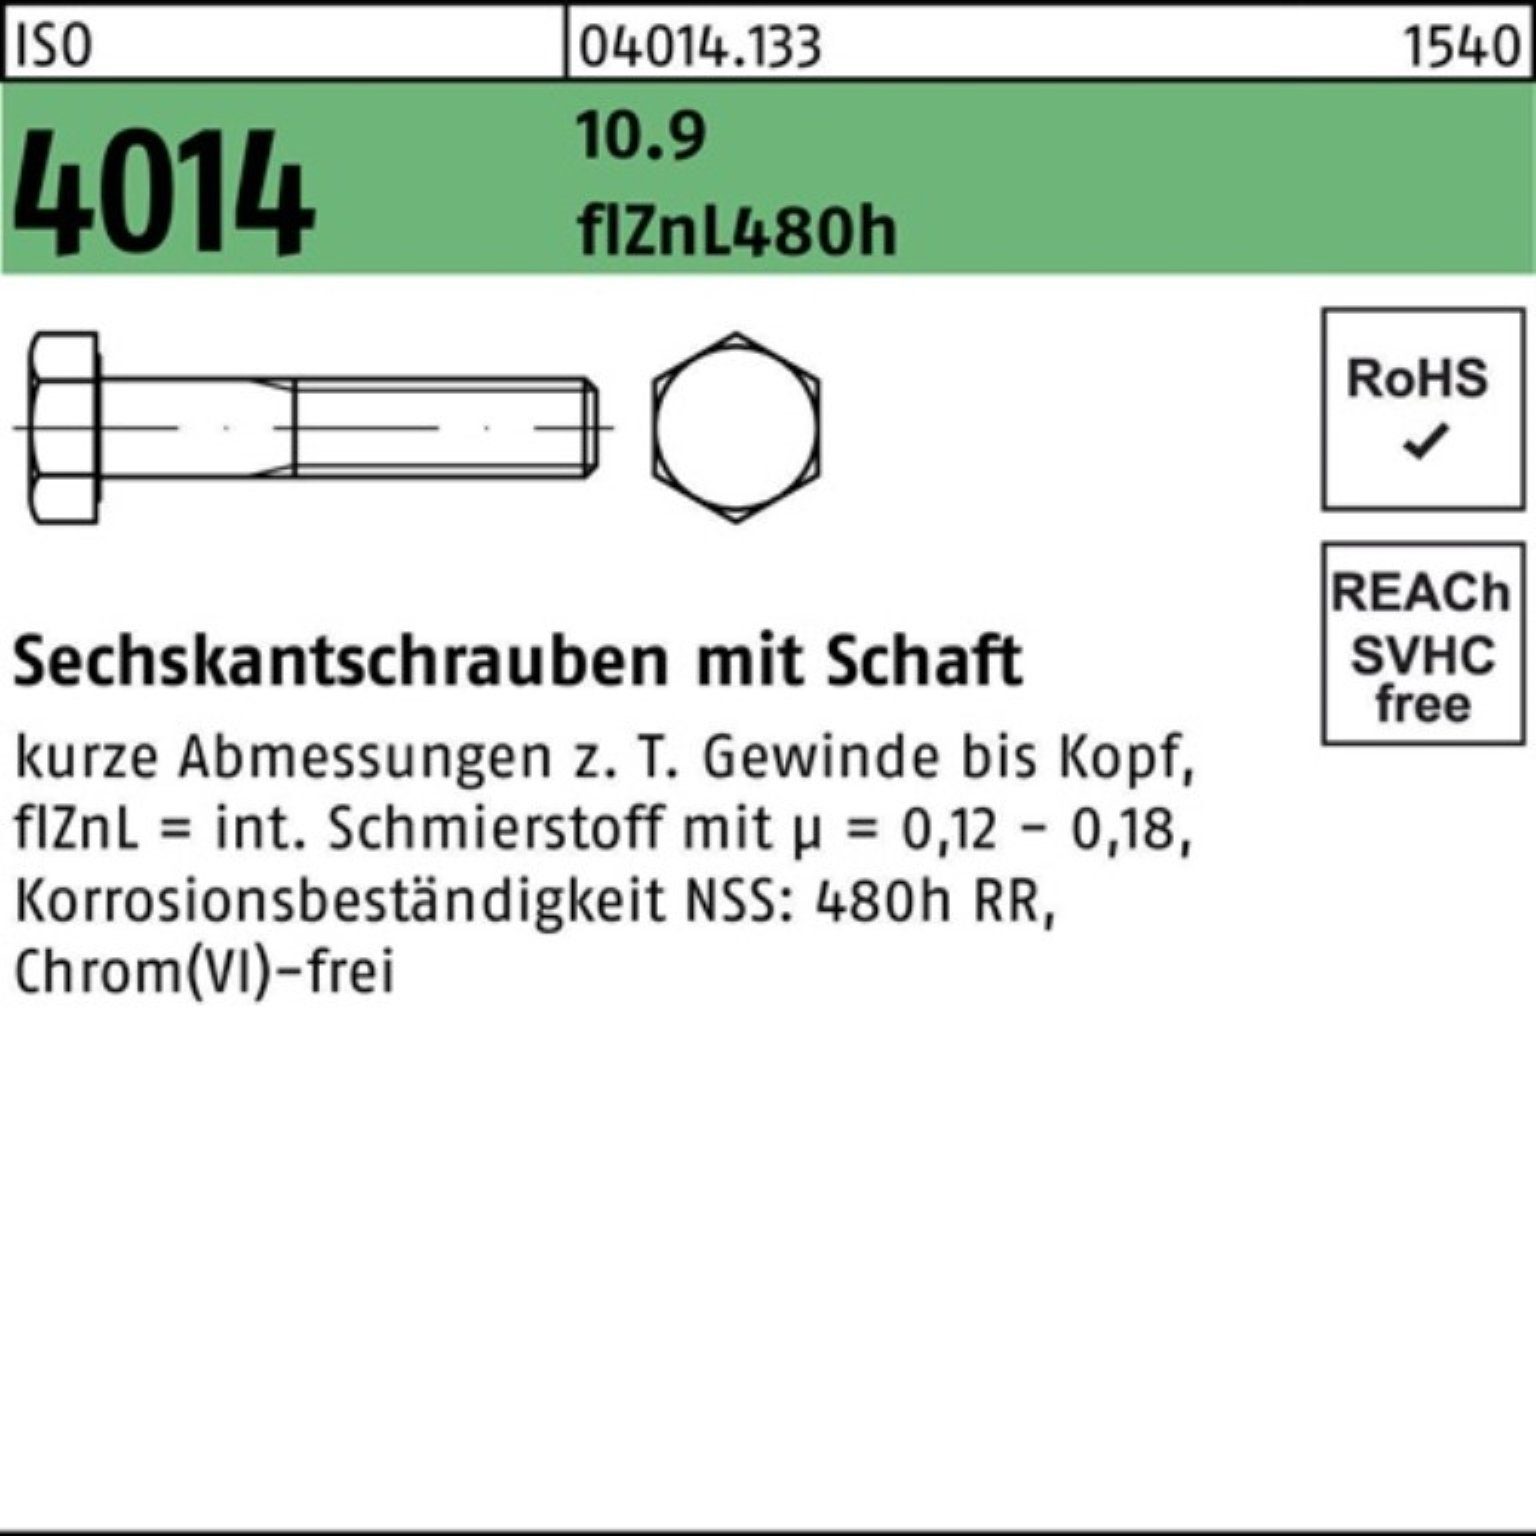 10.9 Bufab Schaft 100er Sechskantschraube Sechskantschraube M20x 4014 360 zinklamelle ISO Pack